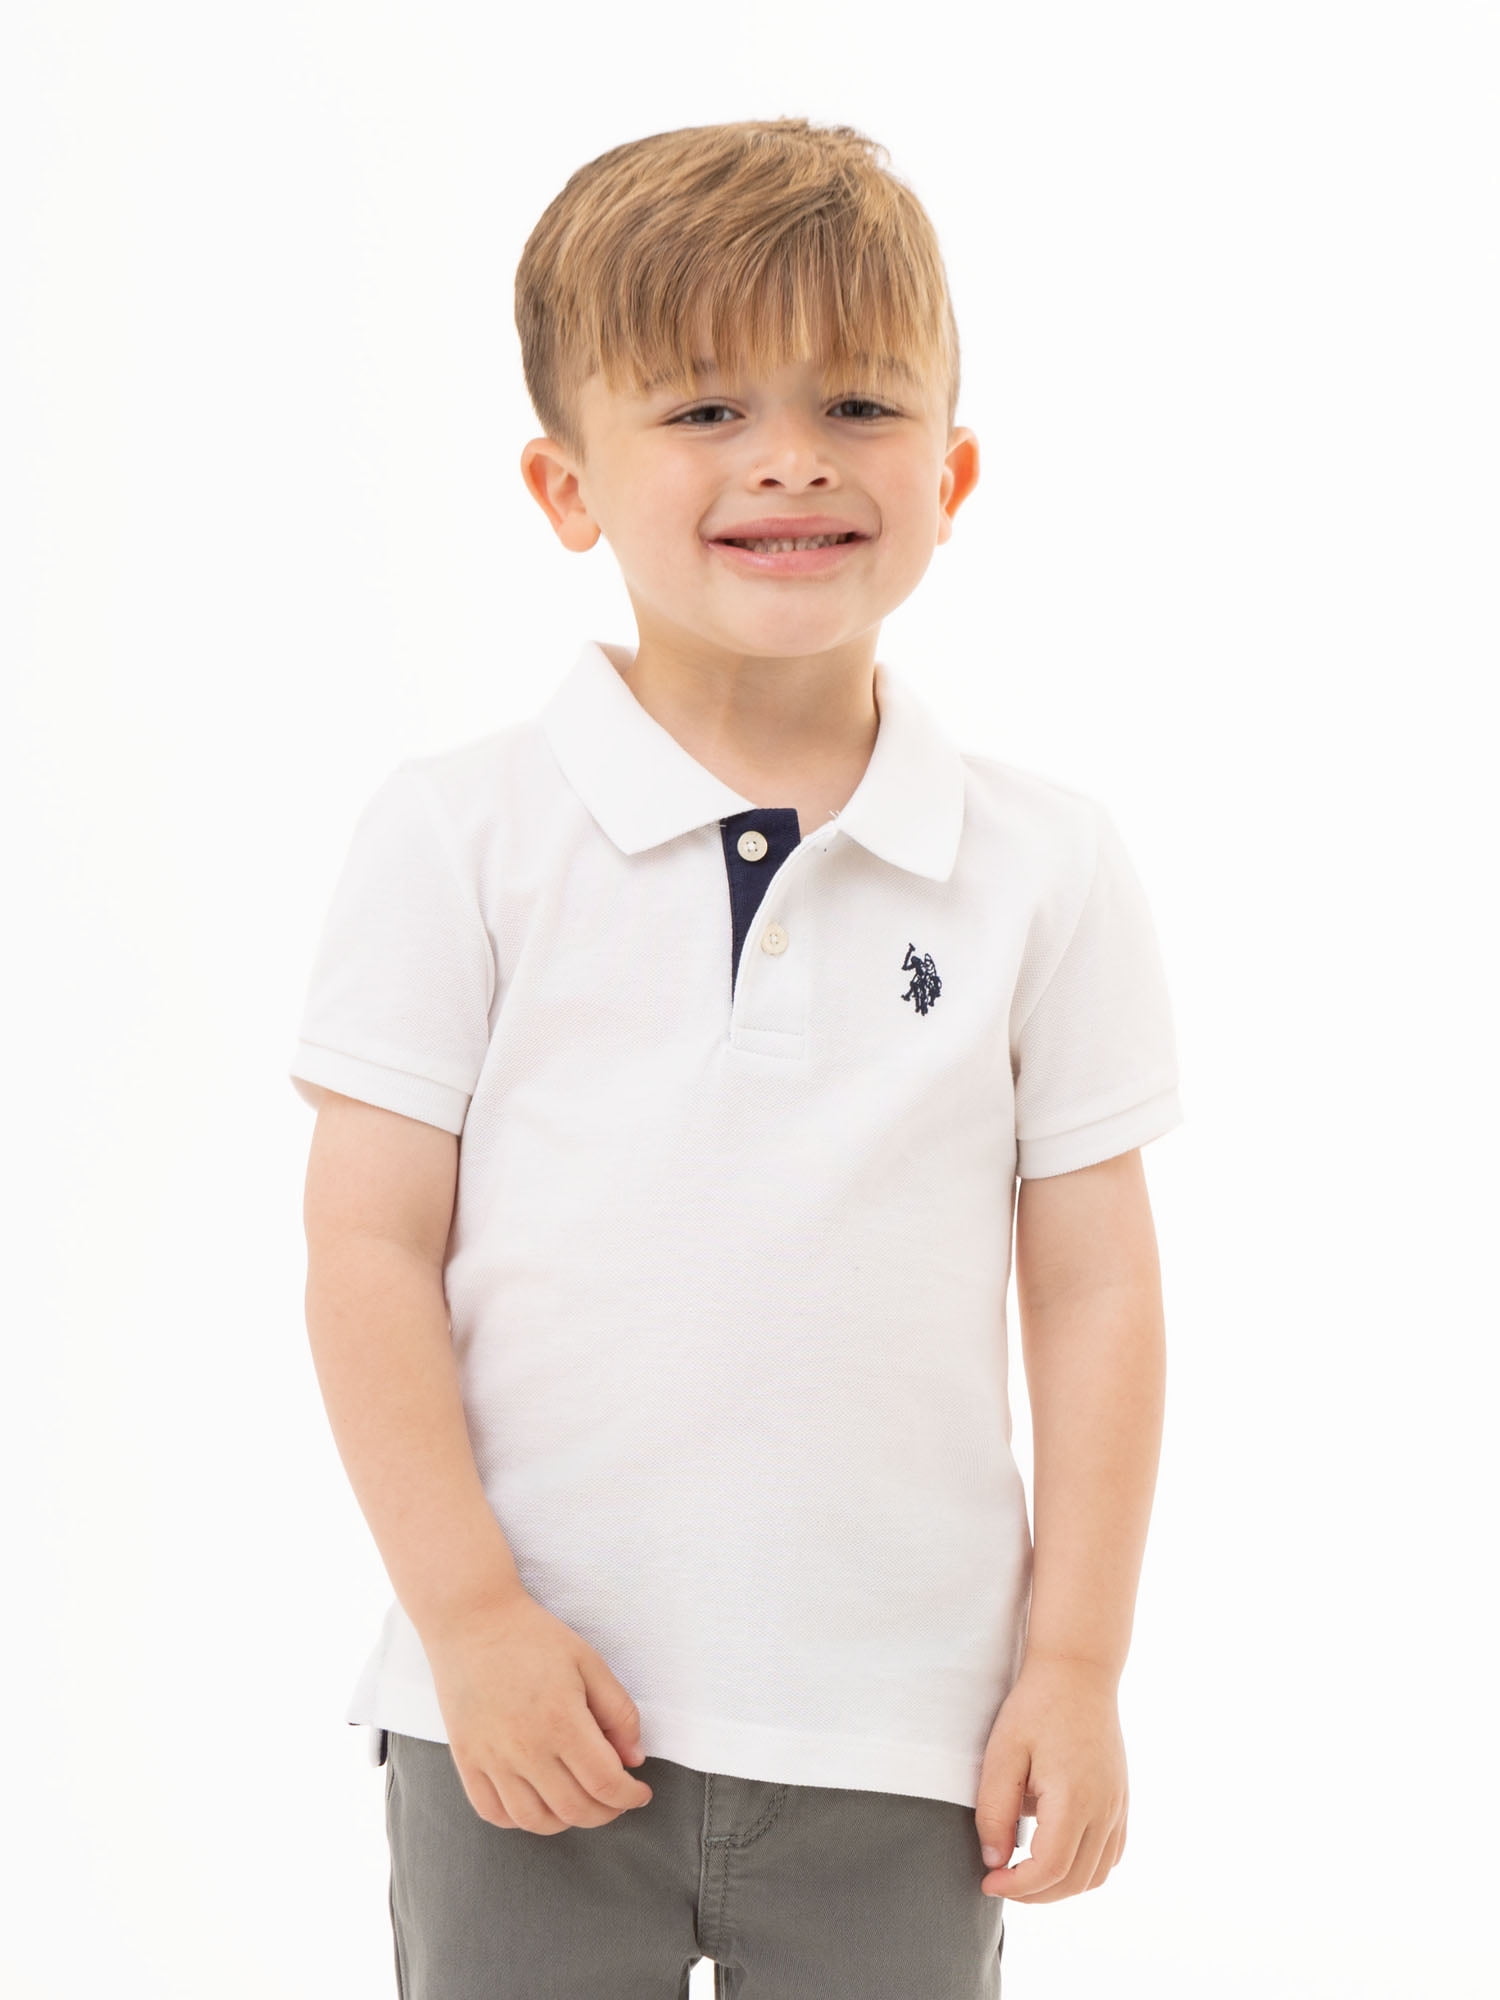 Misleading principle person U.S. Polo Assn. Toddler Boys Pique Polo Shirt, Sizes 2T-5T - Walmart.com